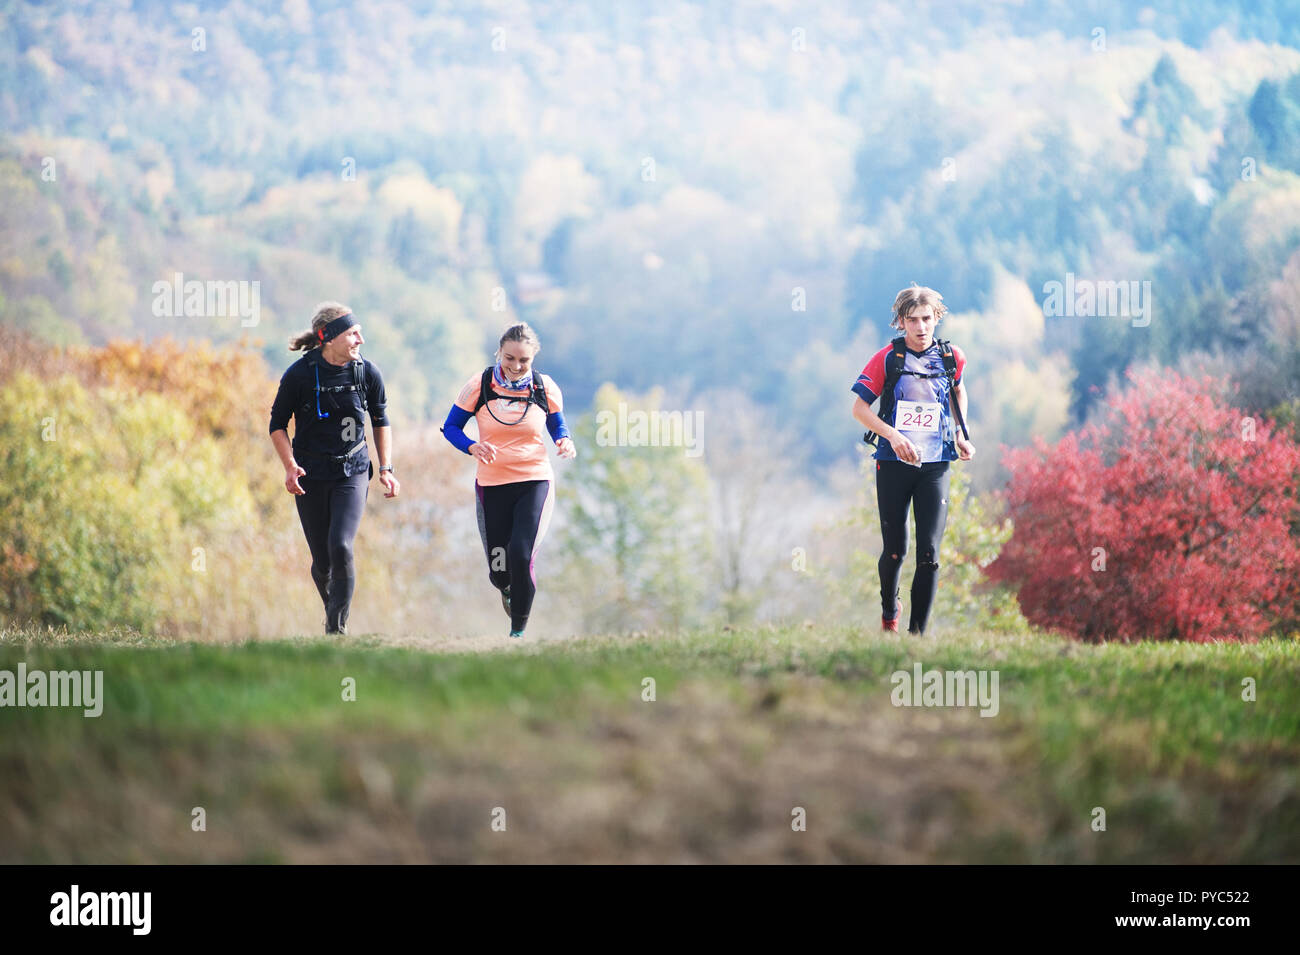 Tschechische Republik, SLAPY, Oktober 2018: Trail Maniacs laufen. Mann Competite mit jungen Paar. Die herbstlichen Wald für den Hintergrund. Stockfoto